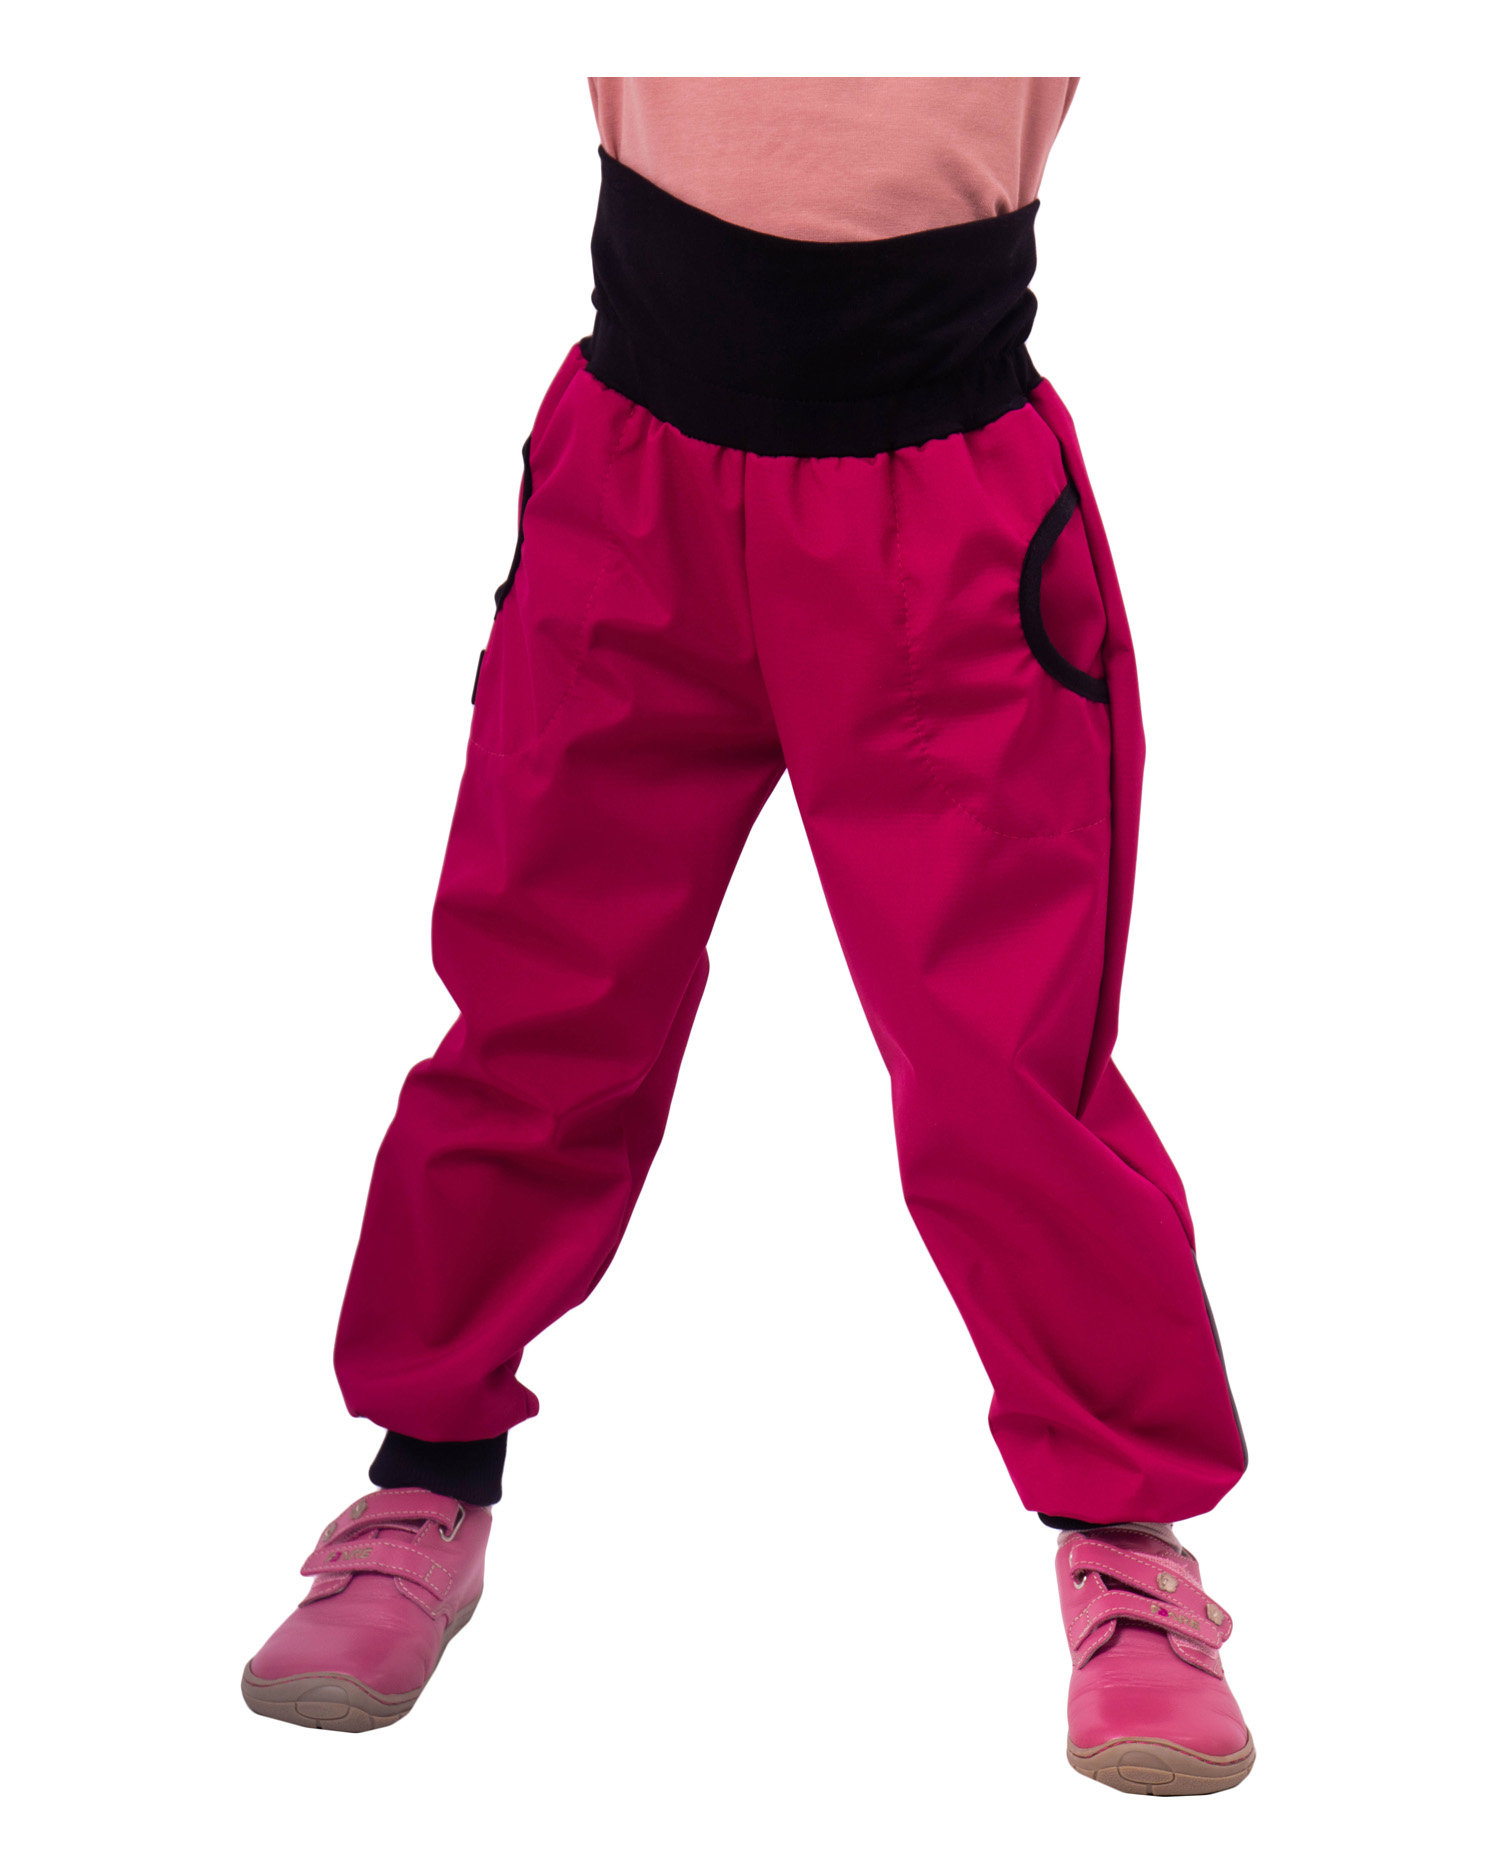 Jarné / letné detské softshellové nohavice, ružové